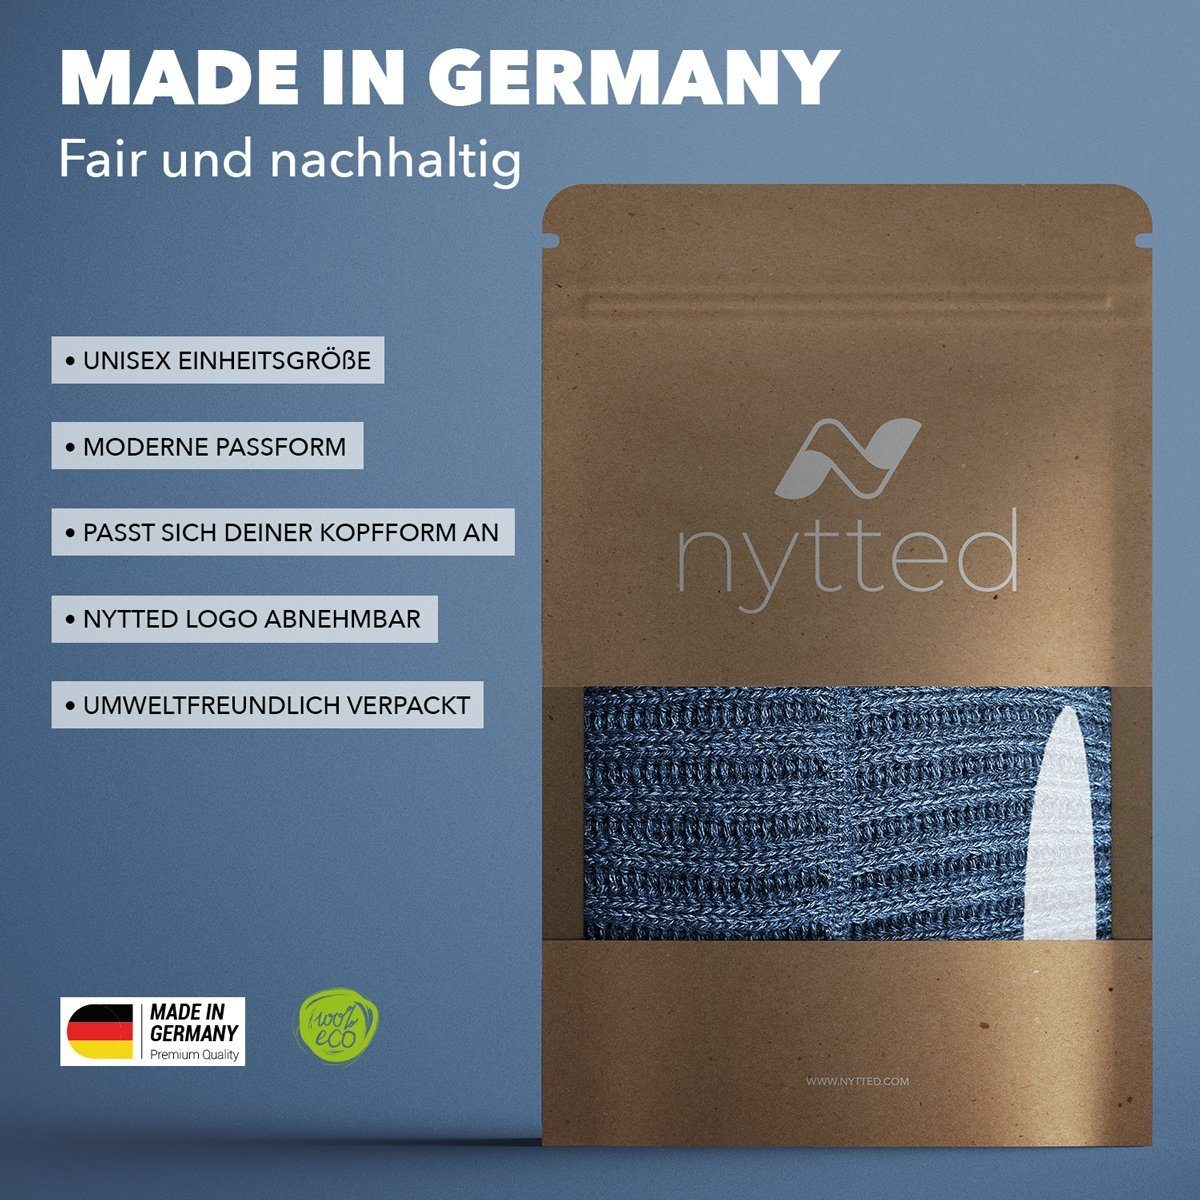 Made - Strickmütze - Herren & für Merino-Wolle 100% - Wintermütze Damen jeans in Germany NYTTED®